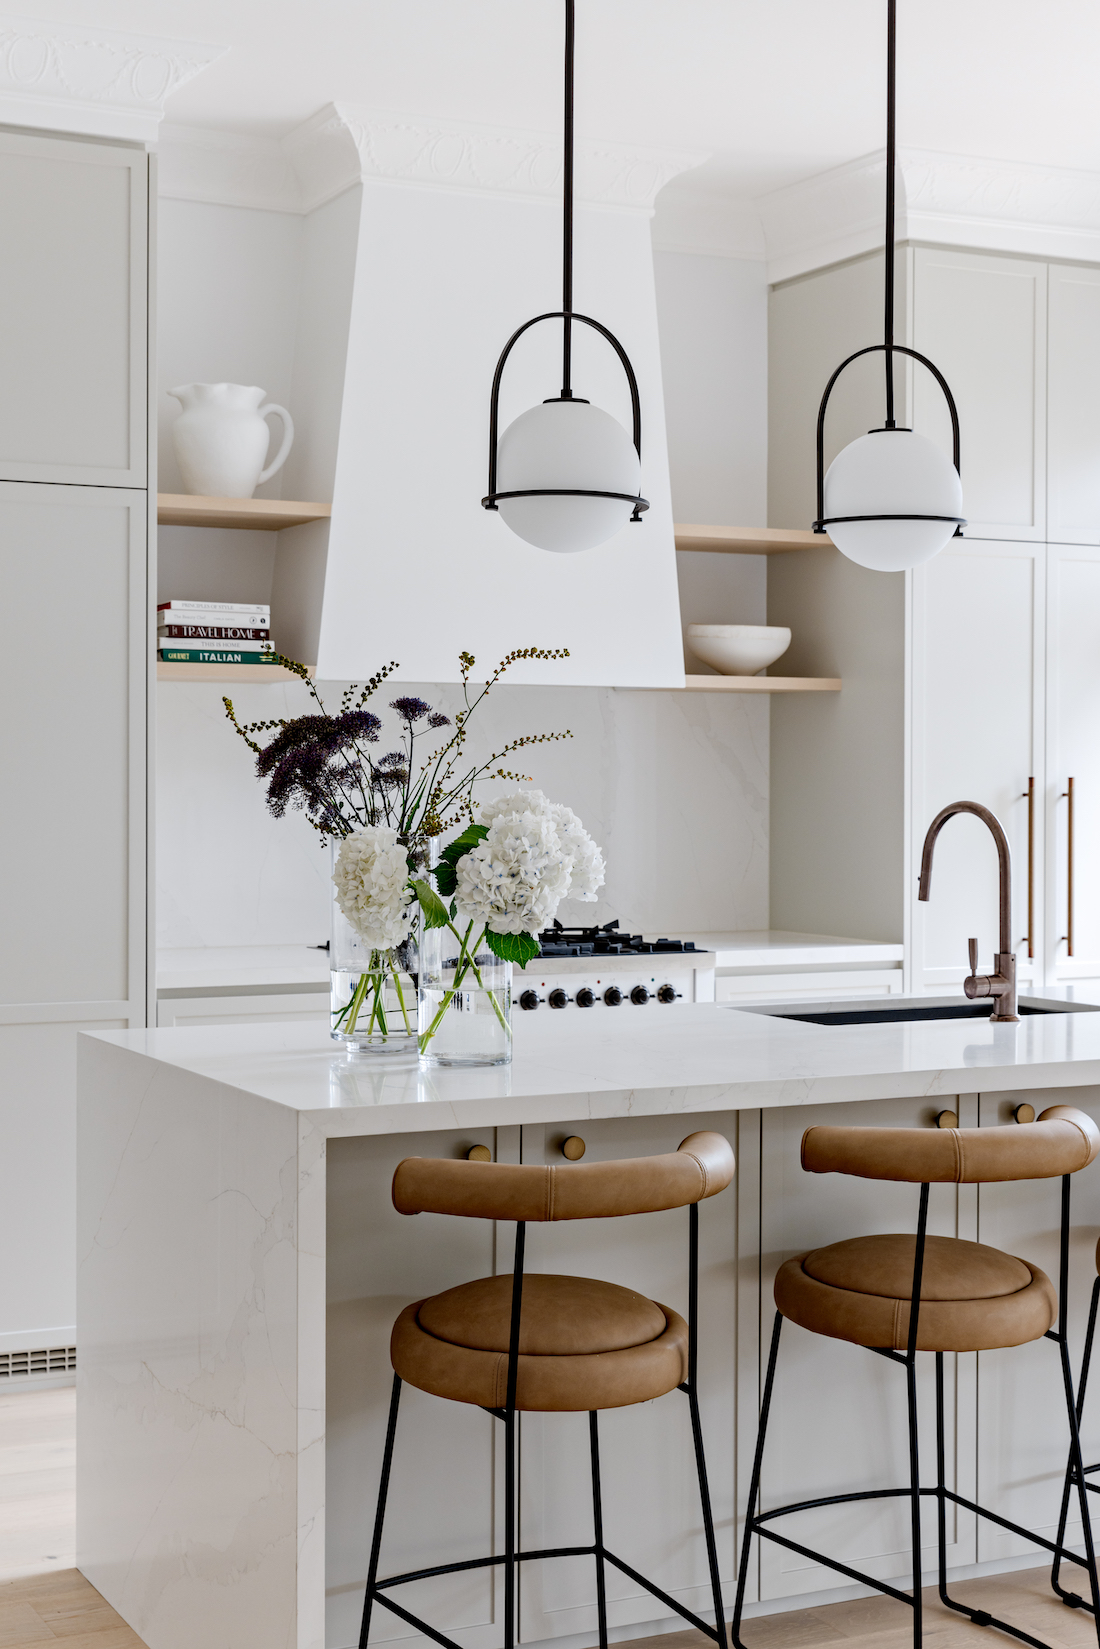 Modern kitchen with brass lights